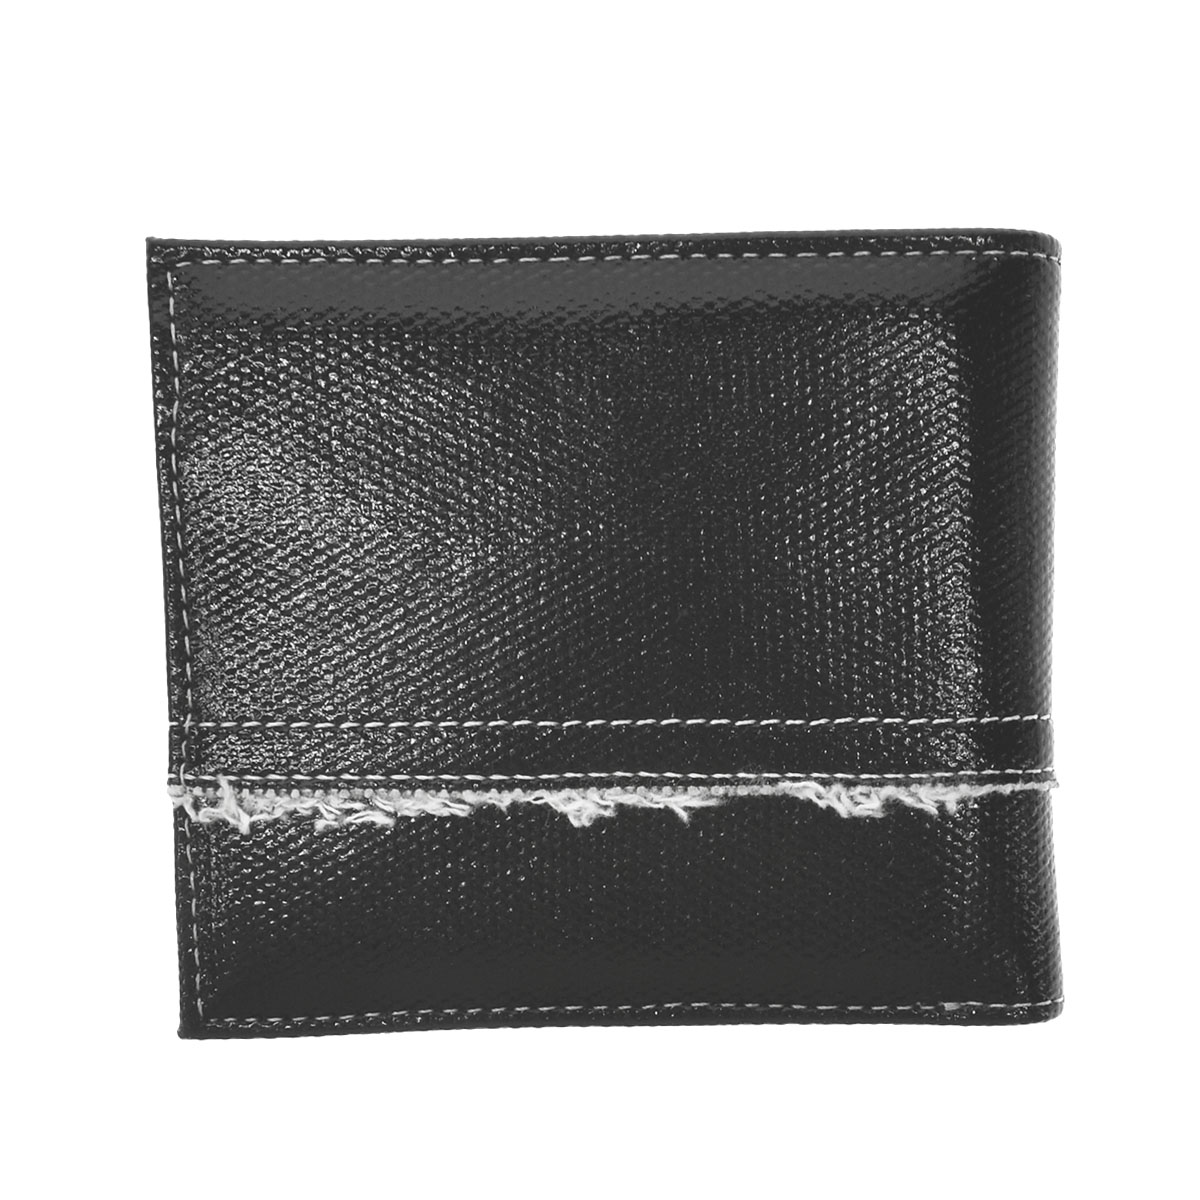 ディーゼル DIESEL 2つ折財布 財布 ブラック X08441 PS167 T8013